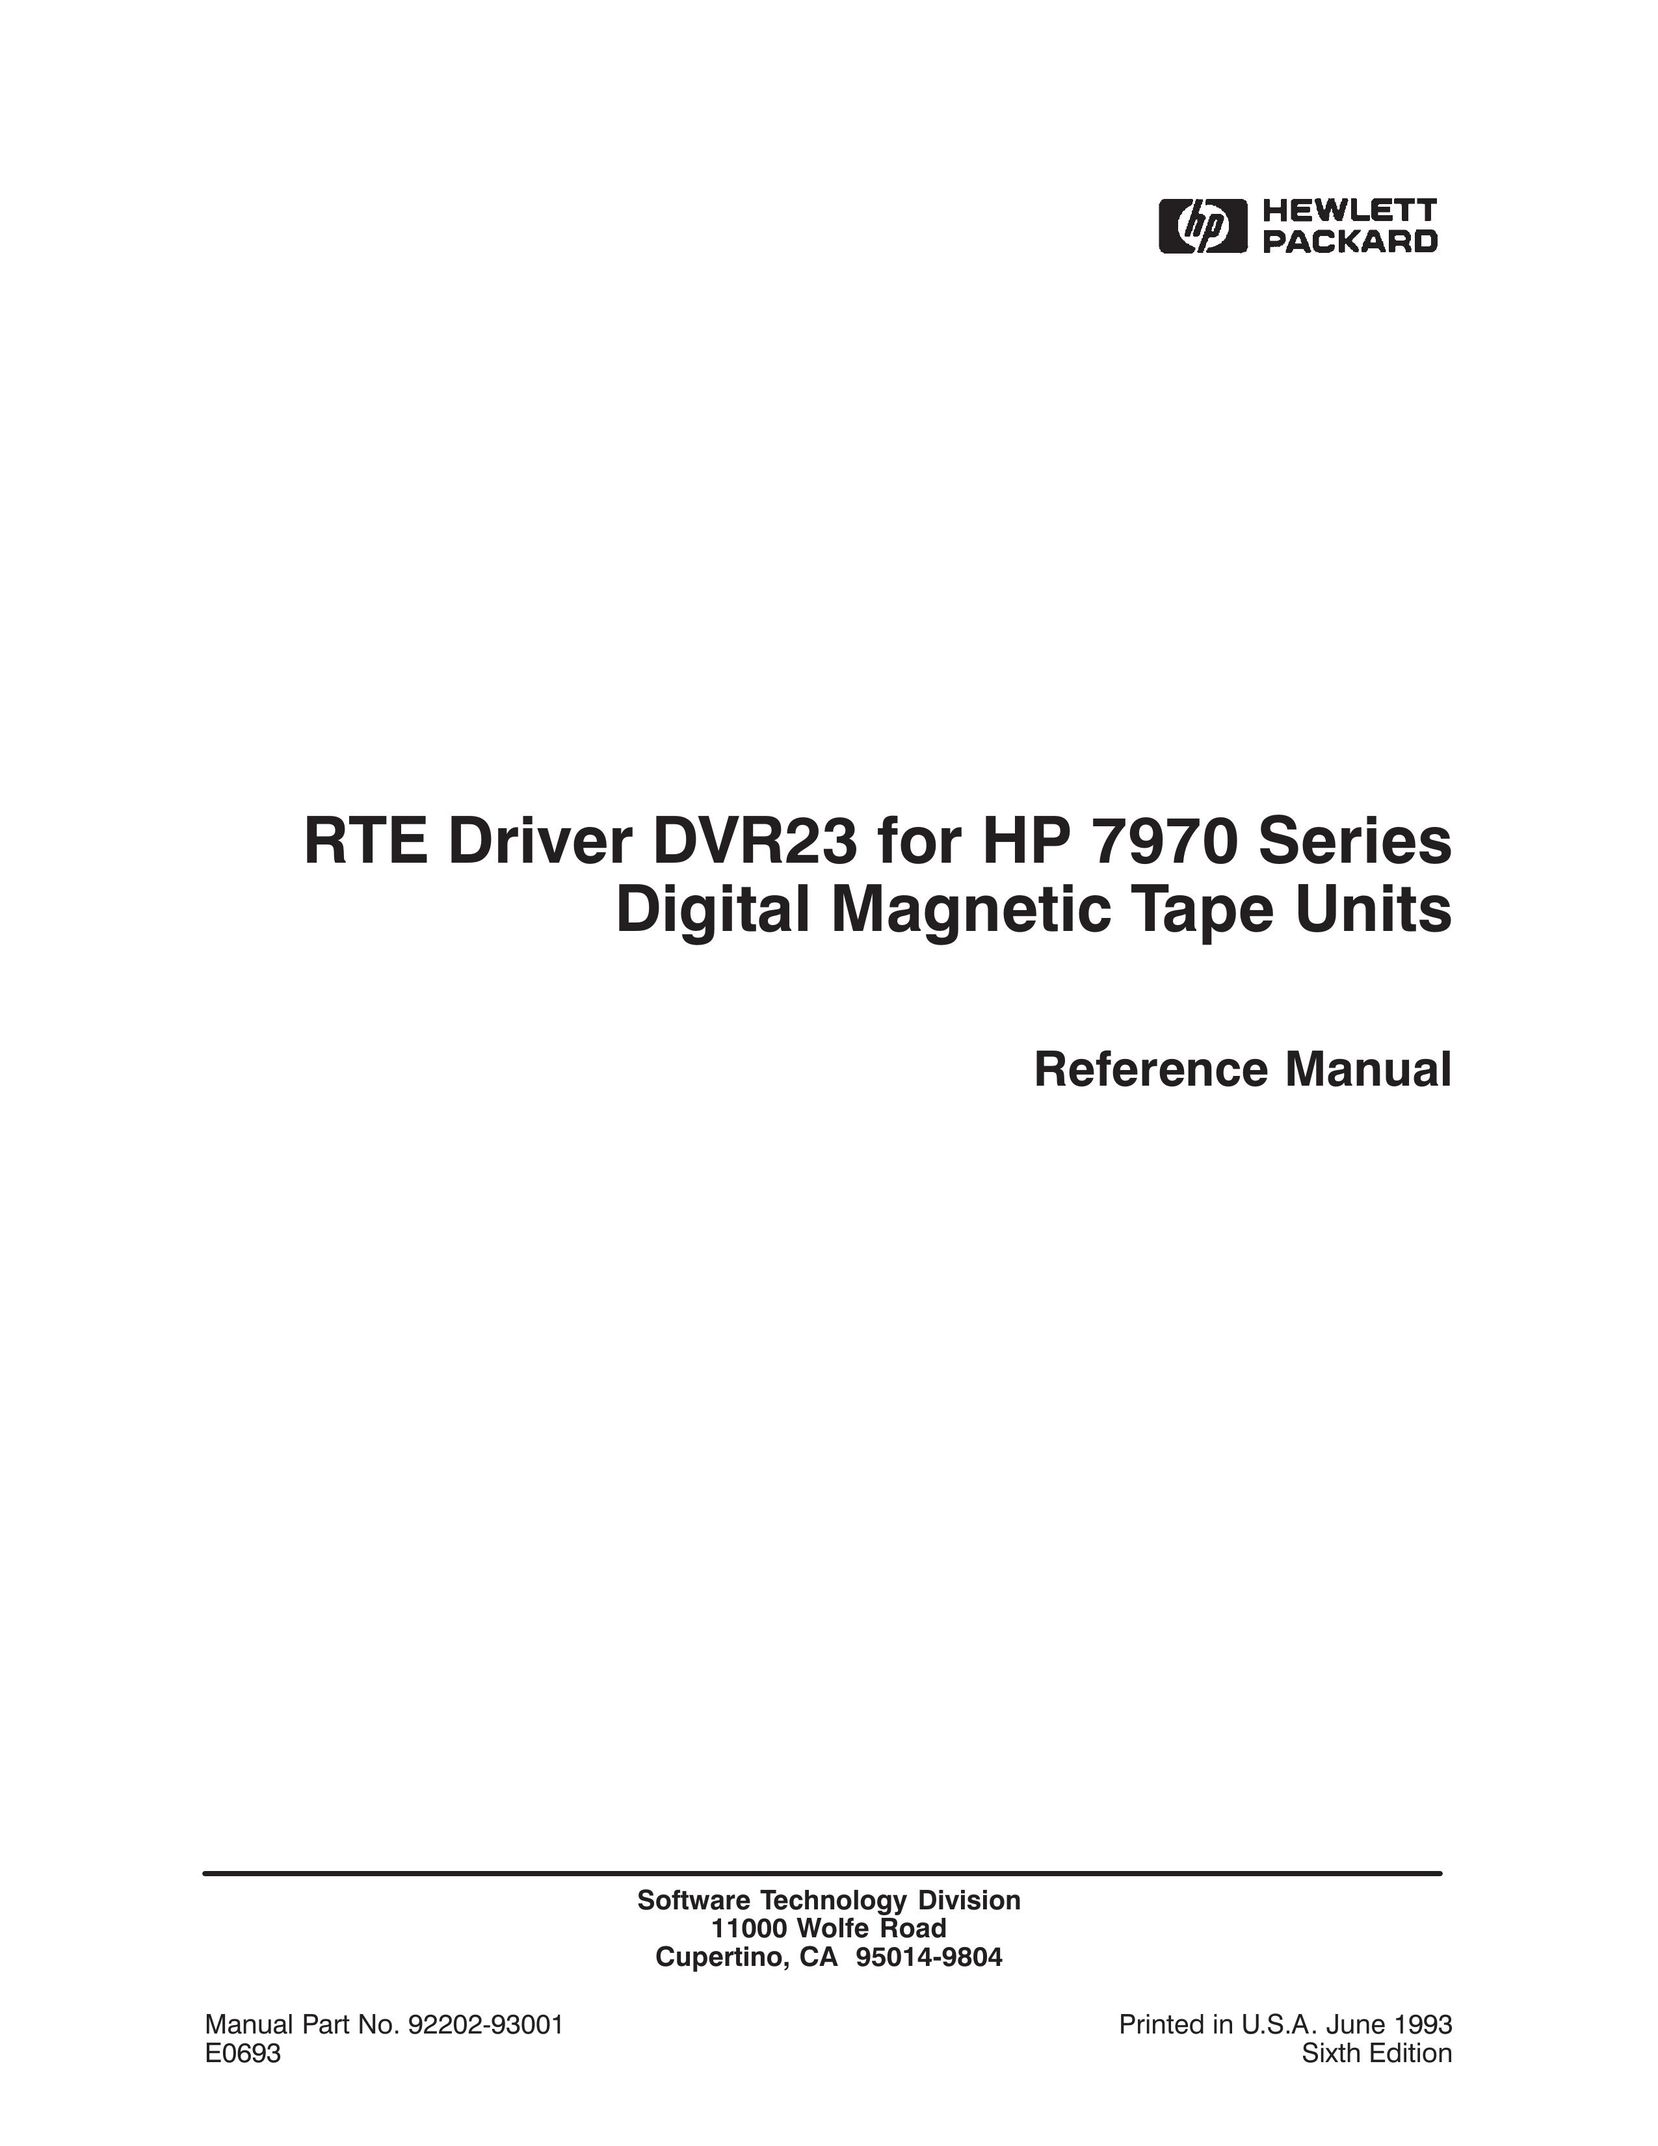 HP (Hewlett-Packard) DVR23 Cassette Player User Manual